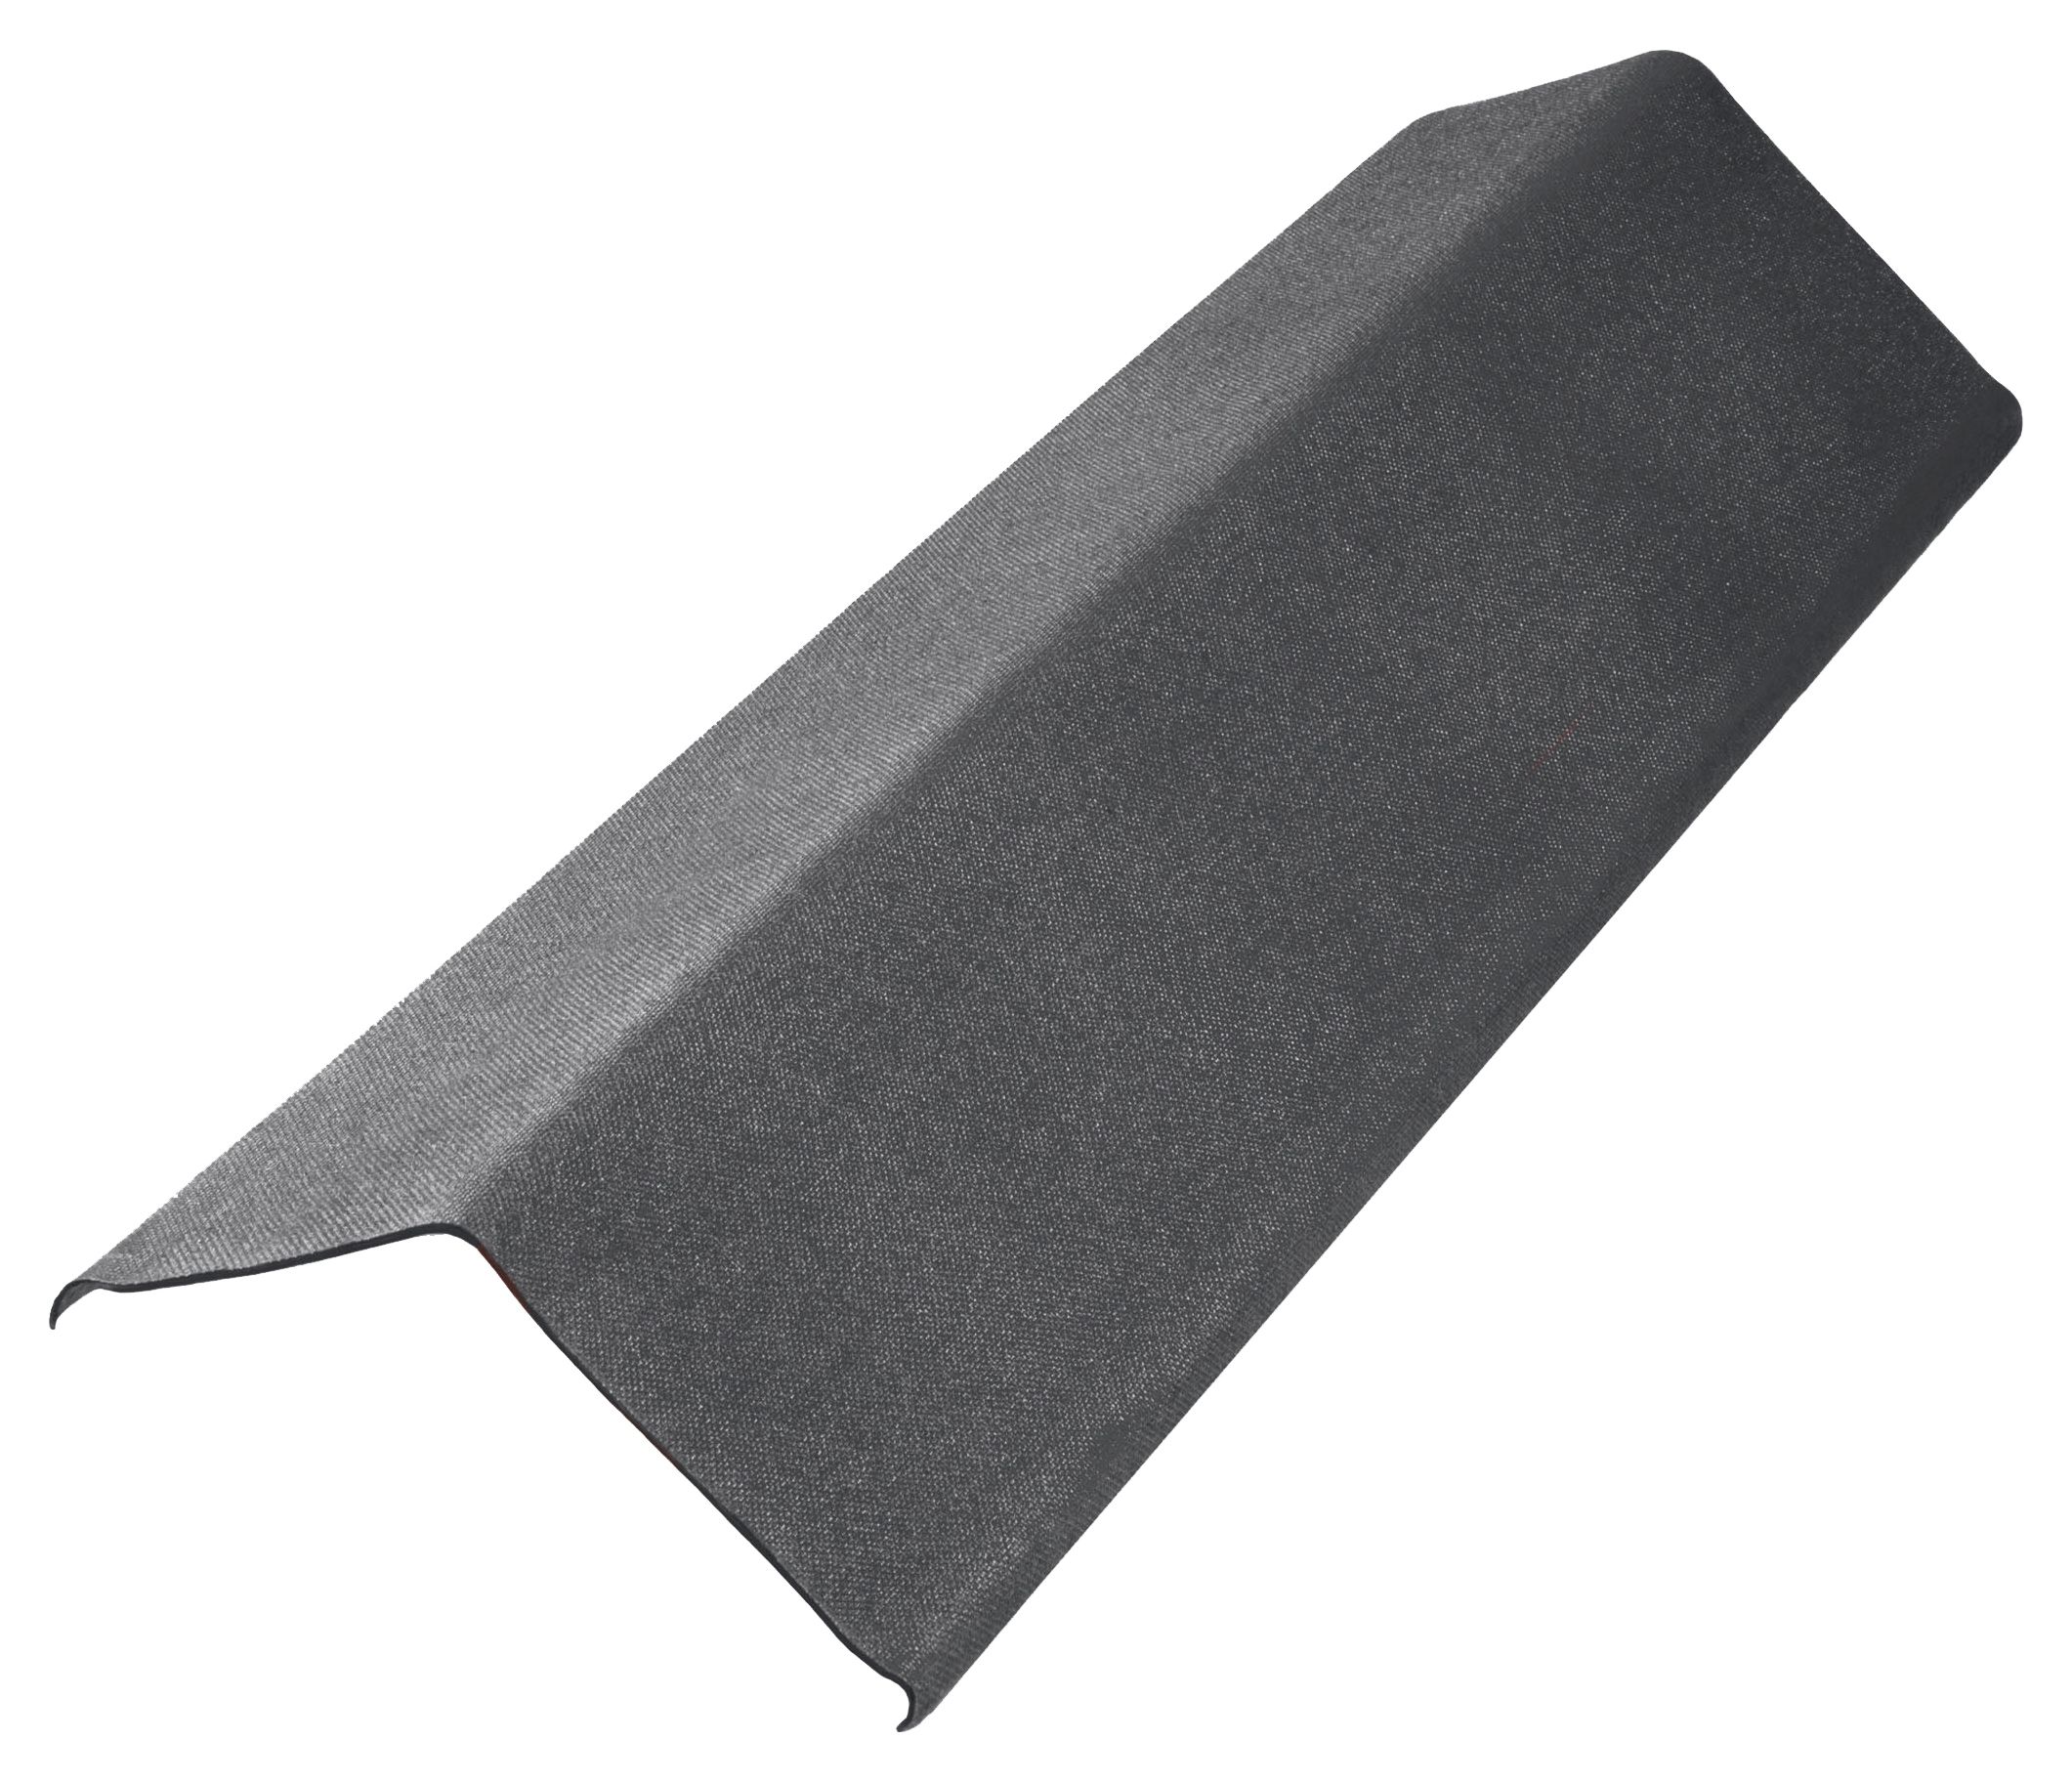 Image of Onduline Anthracite Grey Duro SX 35 Bitumen Slim Verge Piece - 200 x 1000 x 3mm